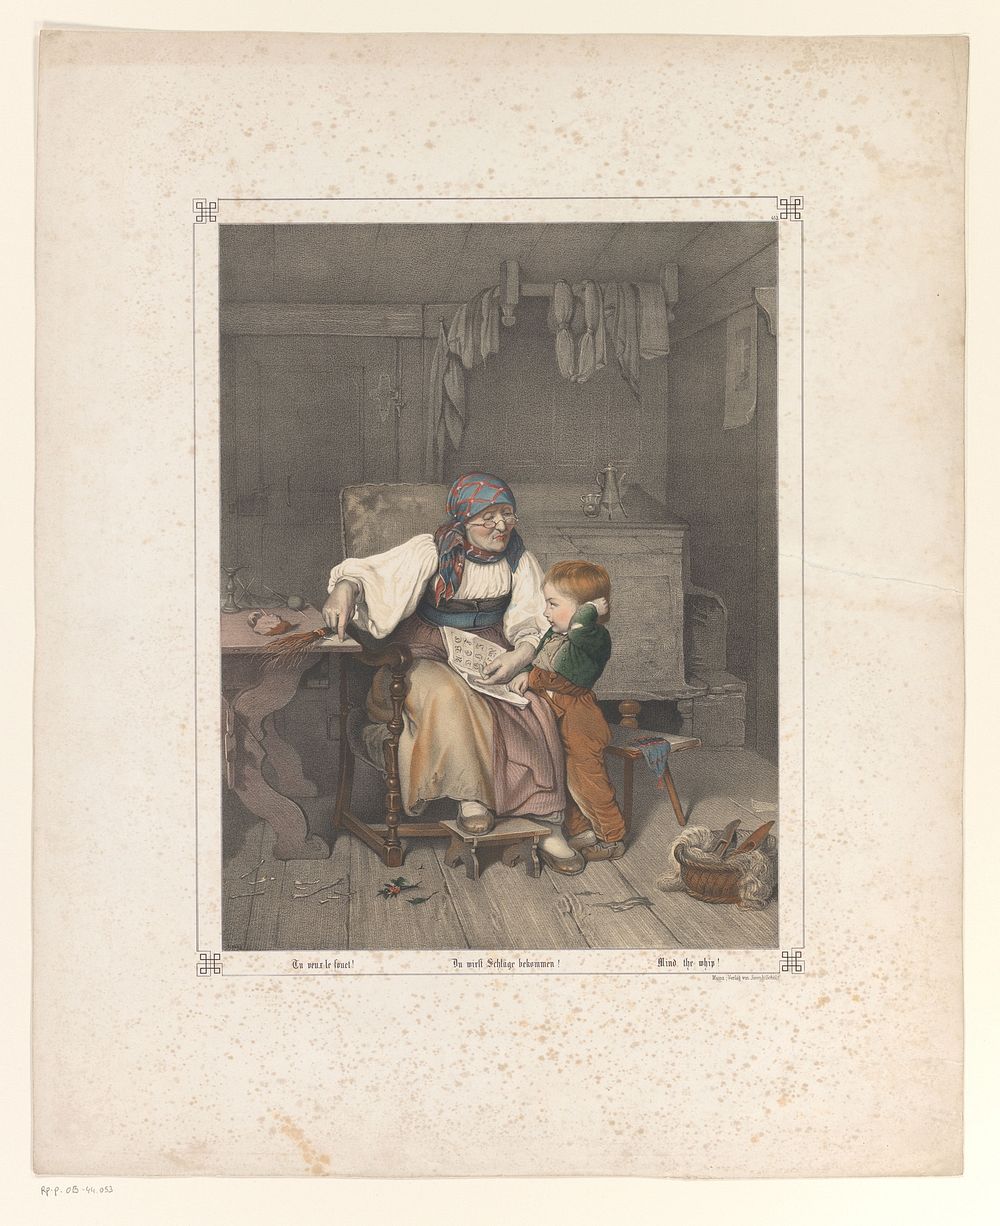 Vrouw geeft een jongen les (1825 - 1875) by anonymous and firma Joseph Scholz